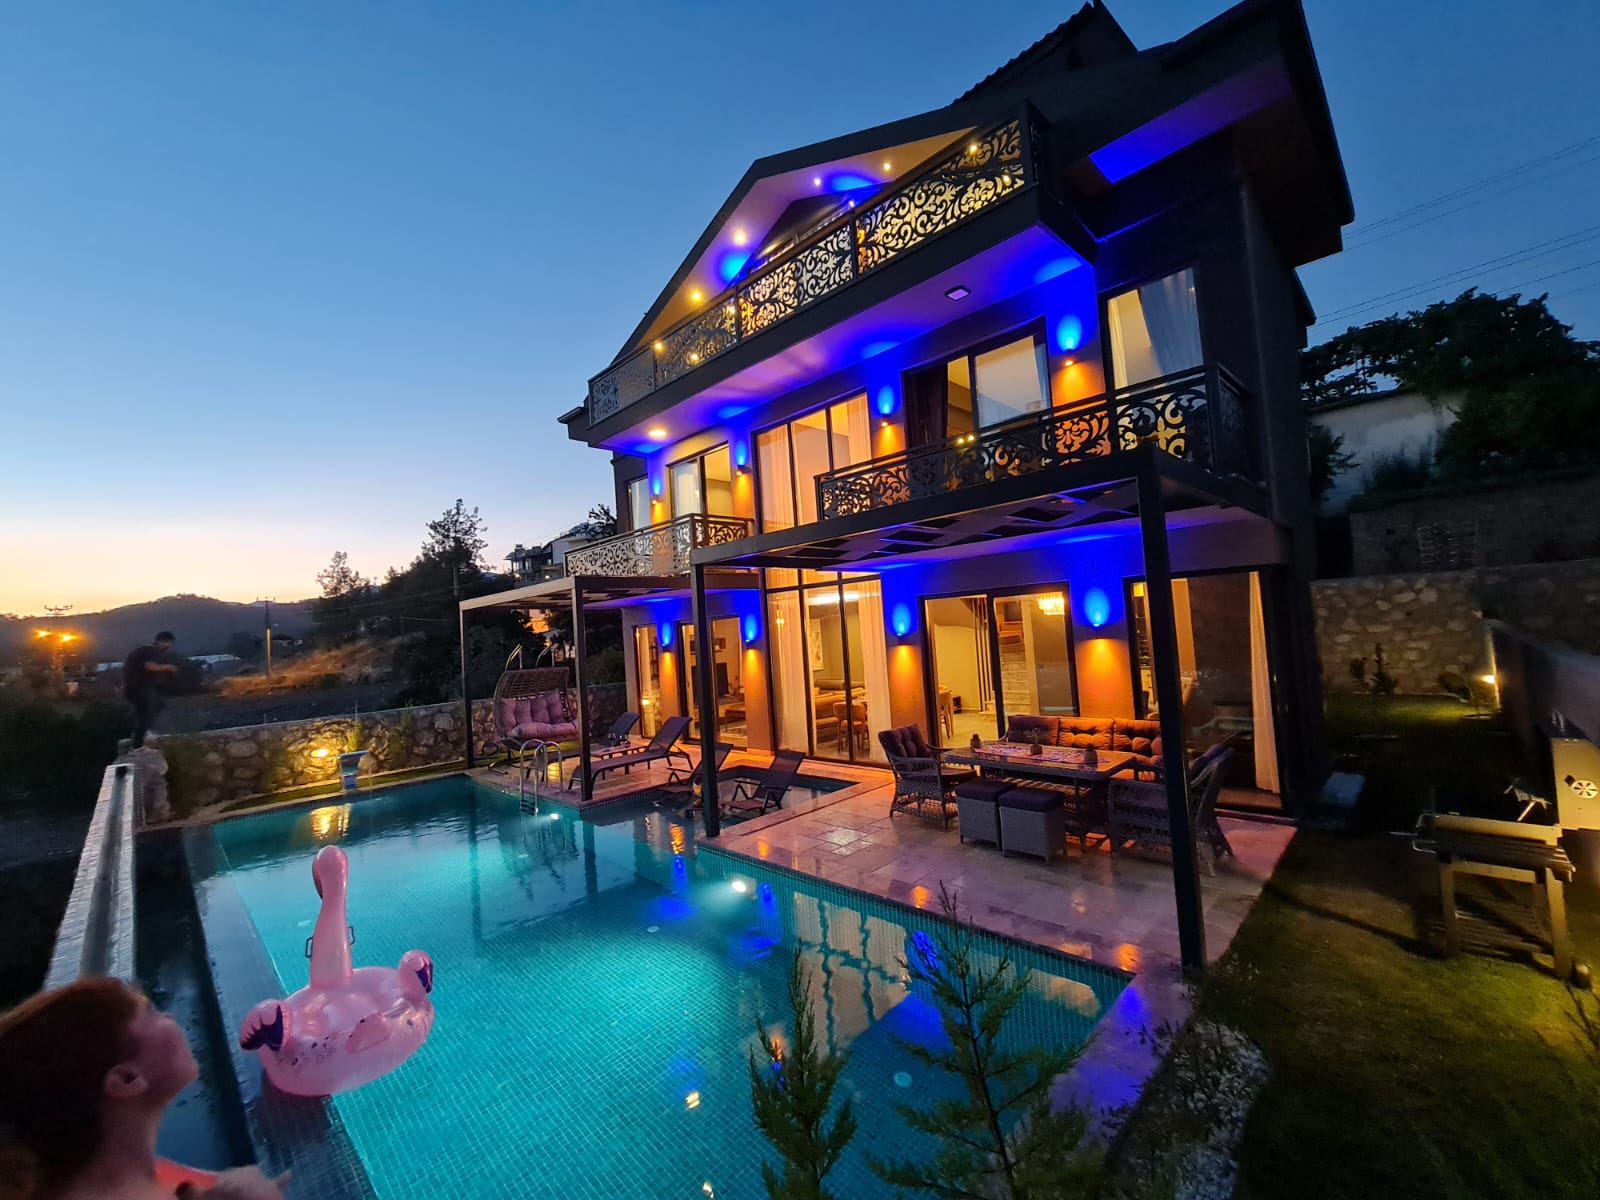 3 Bedroom Luxury Detached Villa with Indoor & Outdoor Pool in Ciftlik